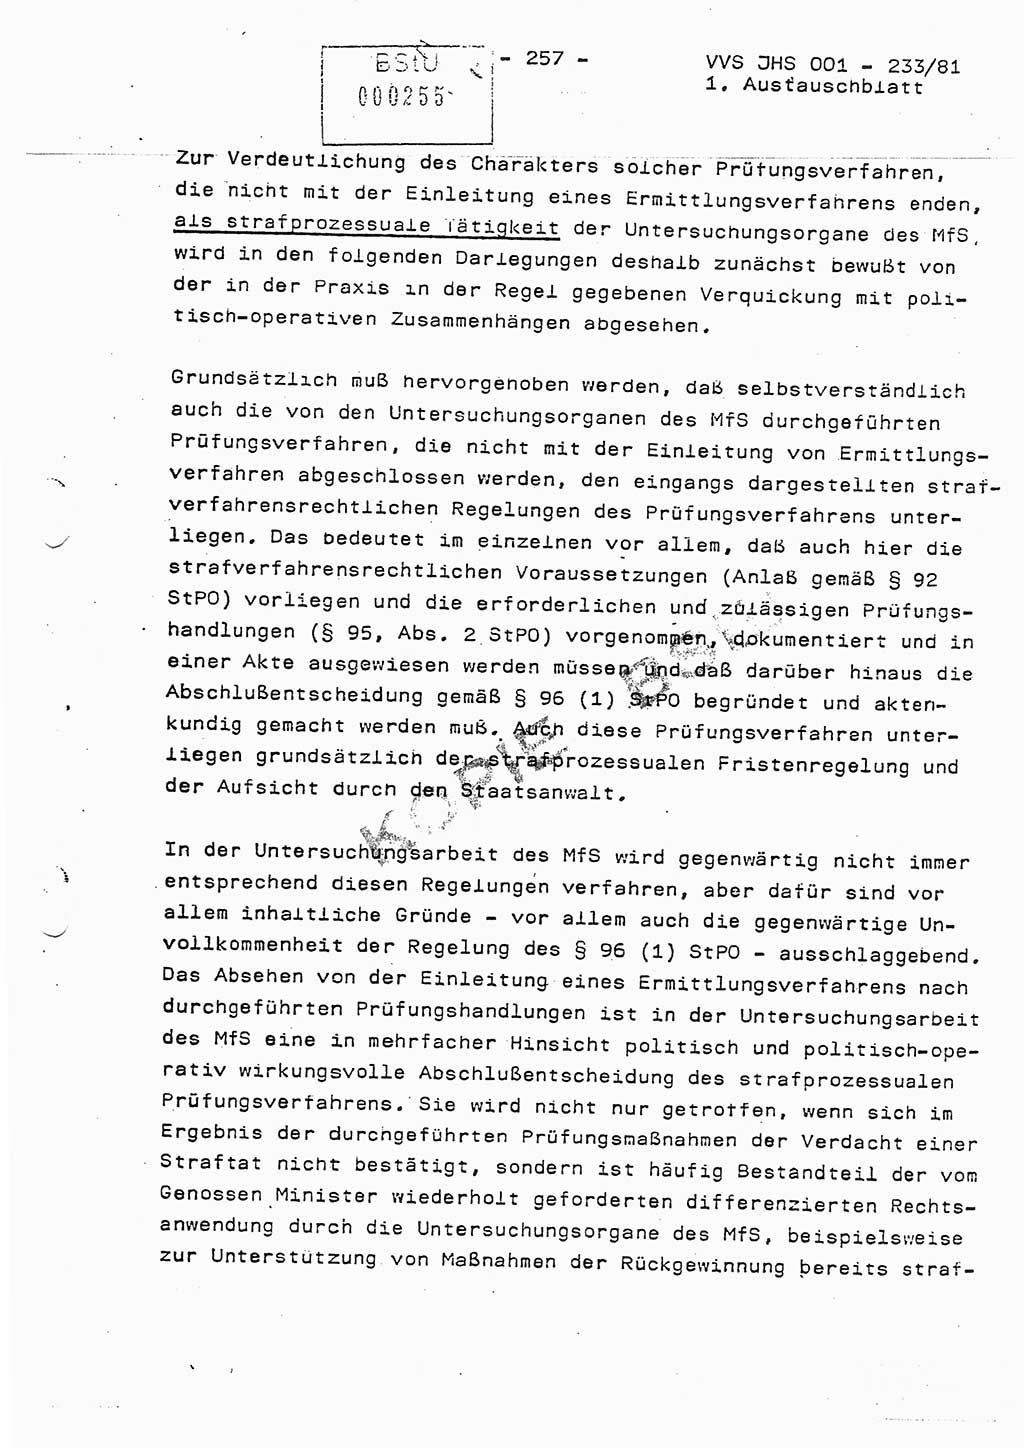 Dissertation Oberstleutnant Horst Zank (JHS), Oberstleutnant Dr. Karl-Heinz Knoblauch (JHS), Oberstleutnant Gustav-Adolf Kowalewski (HA Ⅸ), Oberstleutnant Wolfgang Plötner (HA Ⅸ), Ministerium für Staatssicherheit (MfS) [Deutsche Demokratische Republik (DDR)], Juristische Hochschule (JHS), Vertrauliche Verschlußsache (VVS) o001-233/81, Potsdam 1981, Blatt 257/1 (Diss. MfS DDR JHS VVS o001-233/81 1981, Bl. 257/1)